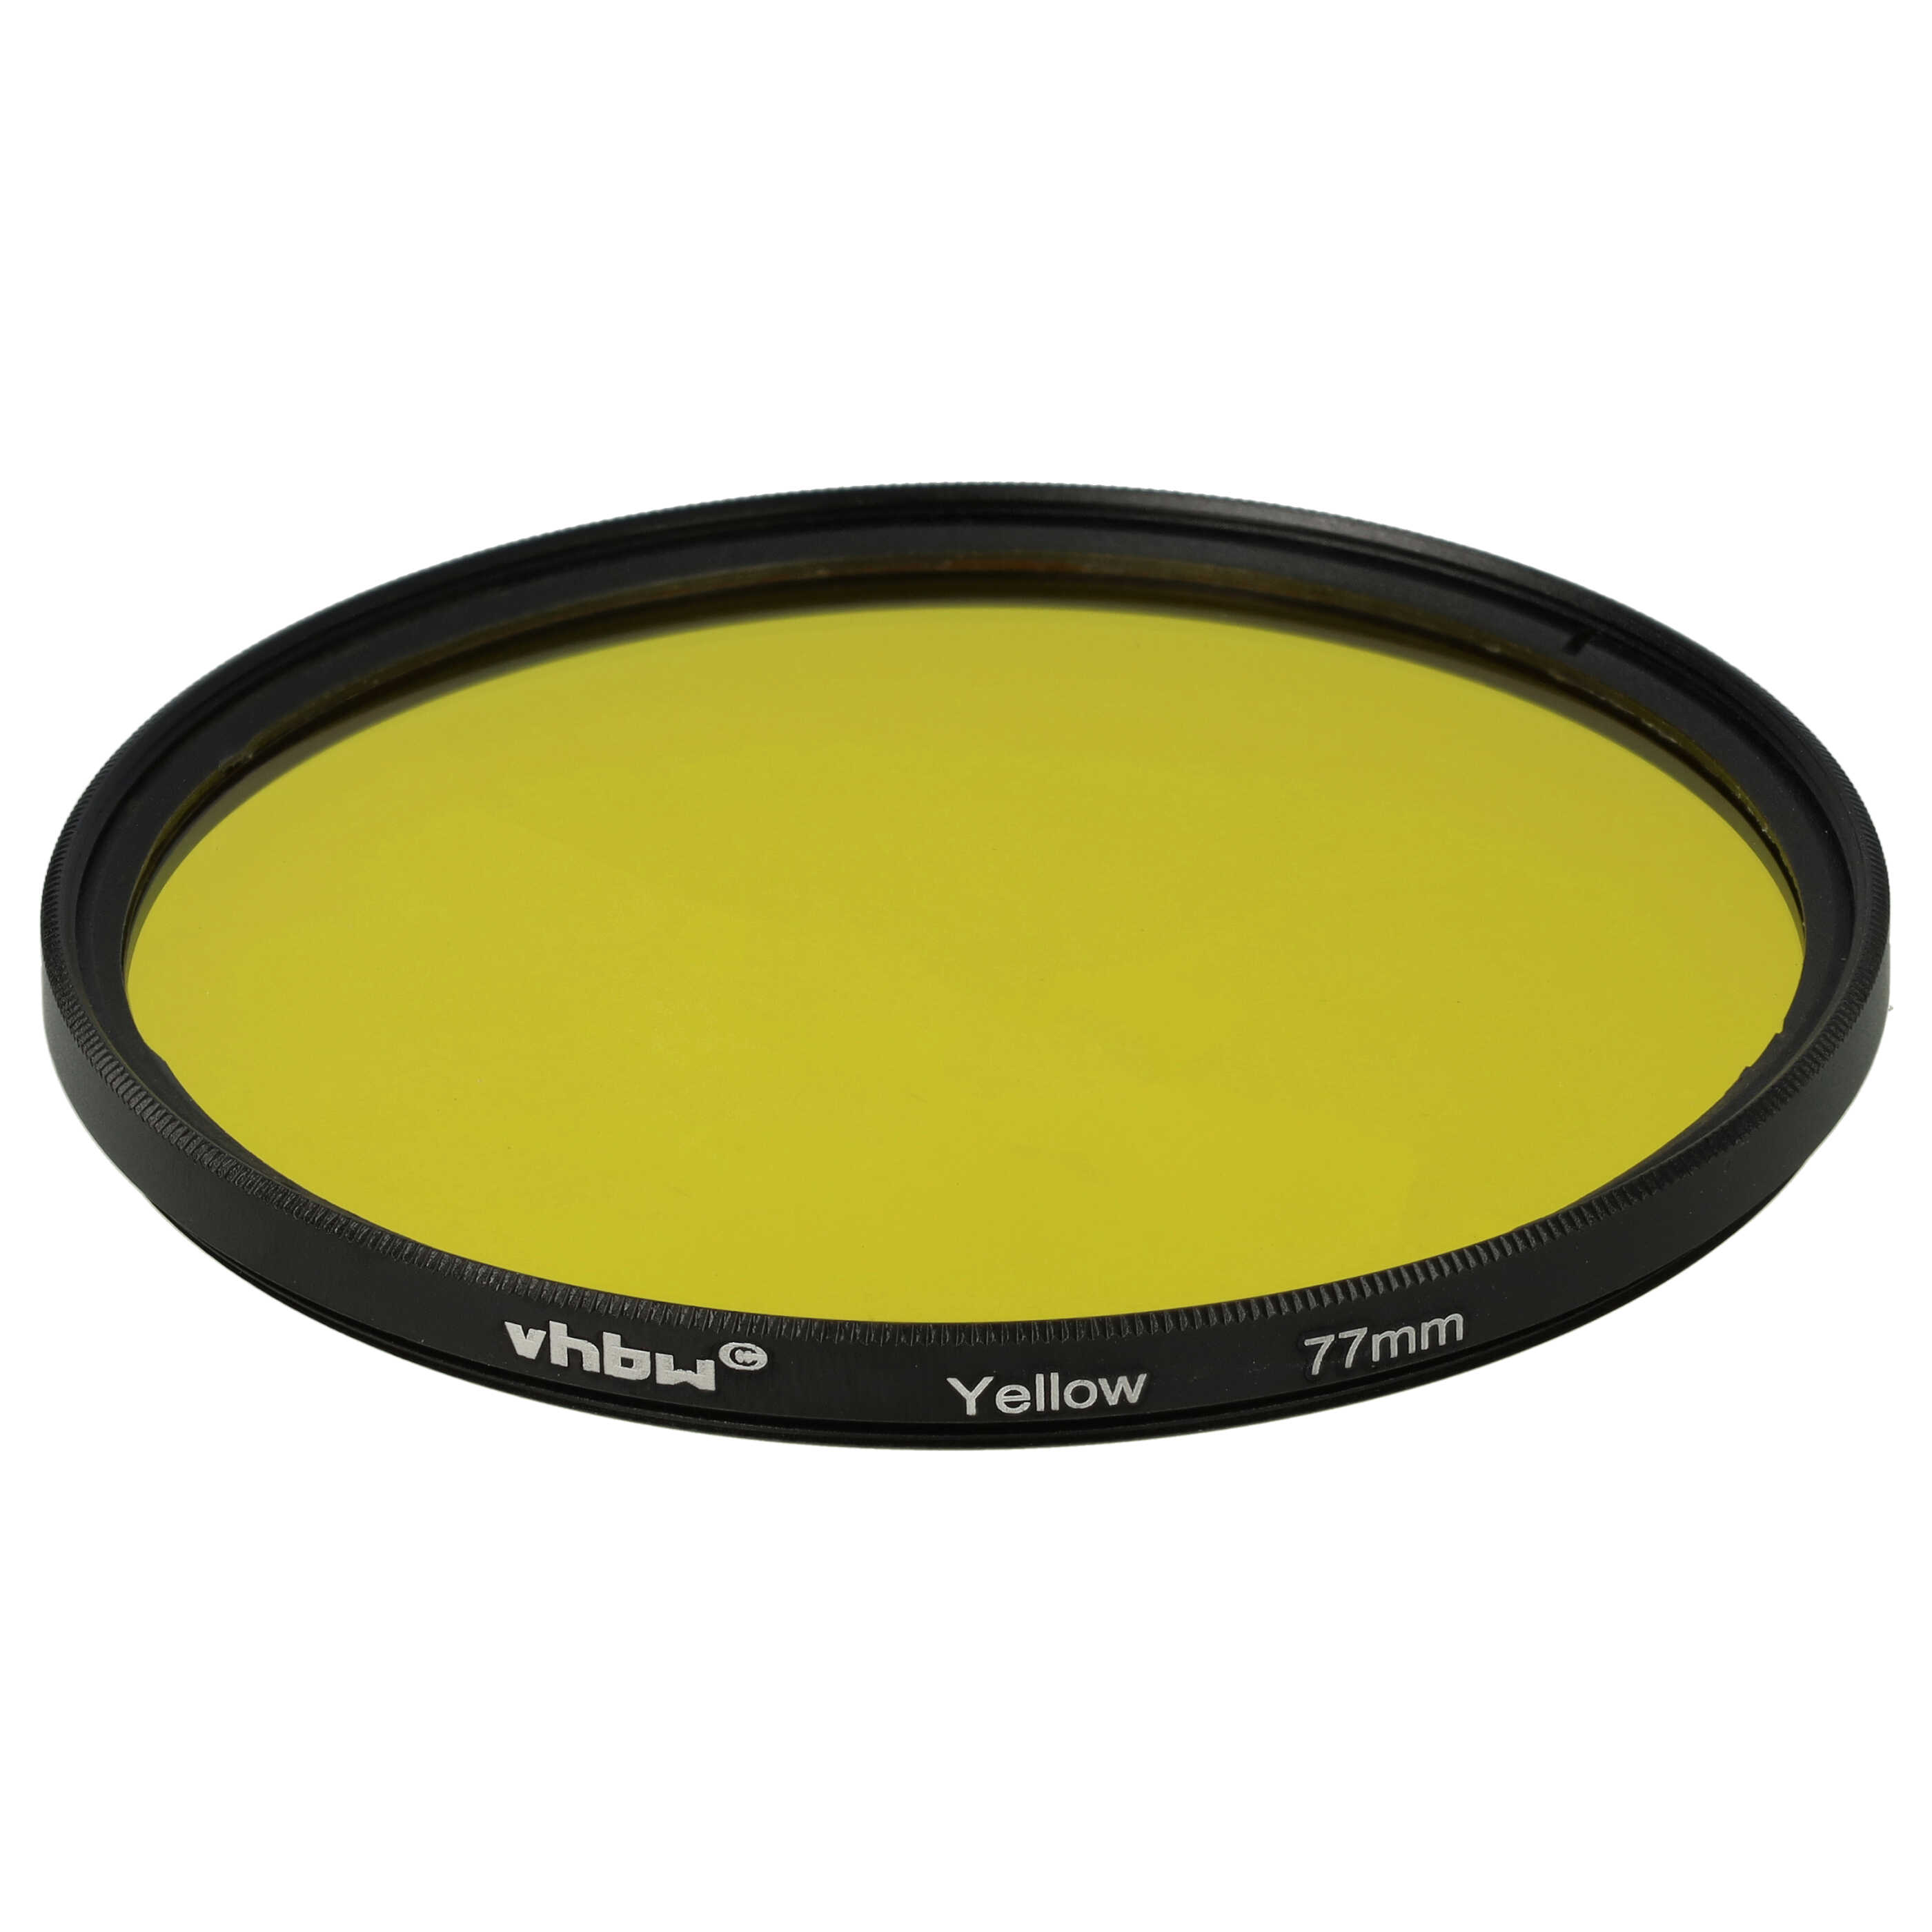 Farbfilter gelb passend für Kamera Objektive mit 77 mm Filtergewinde - Gelbfilter